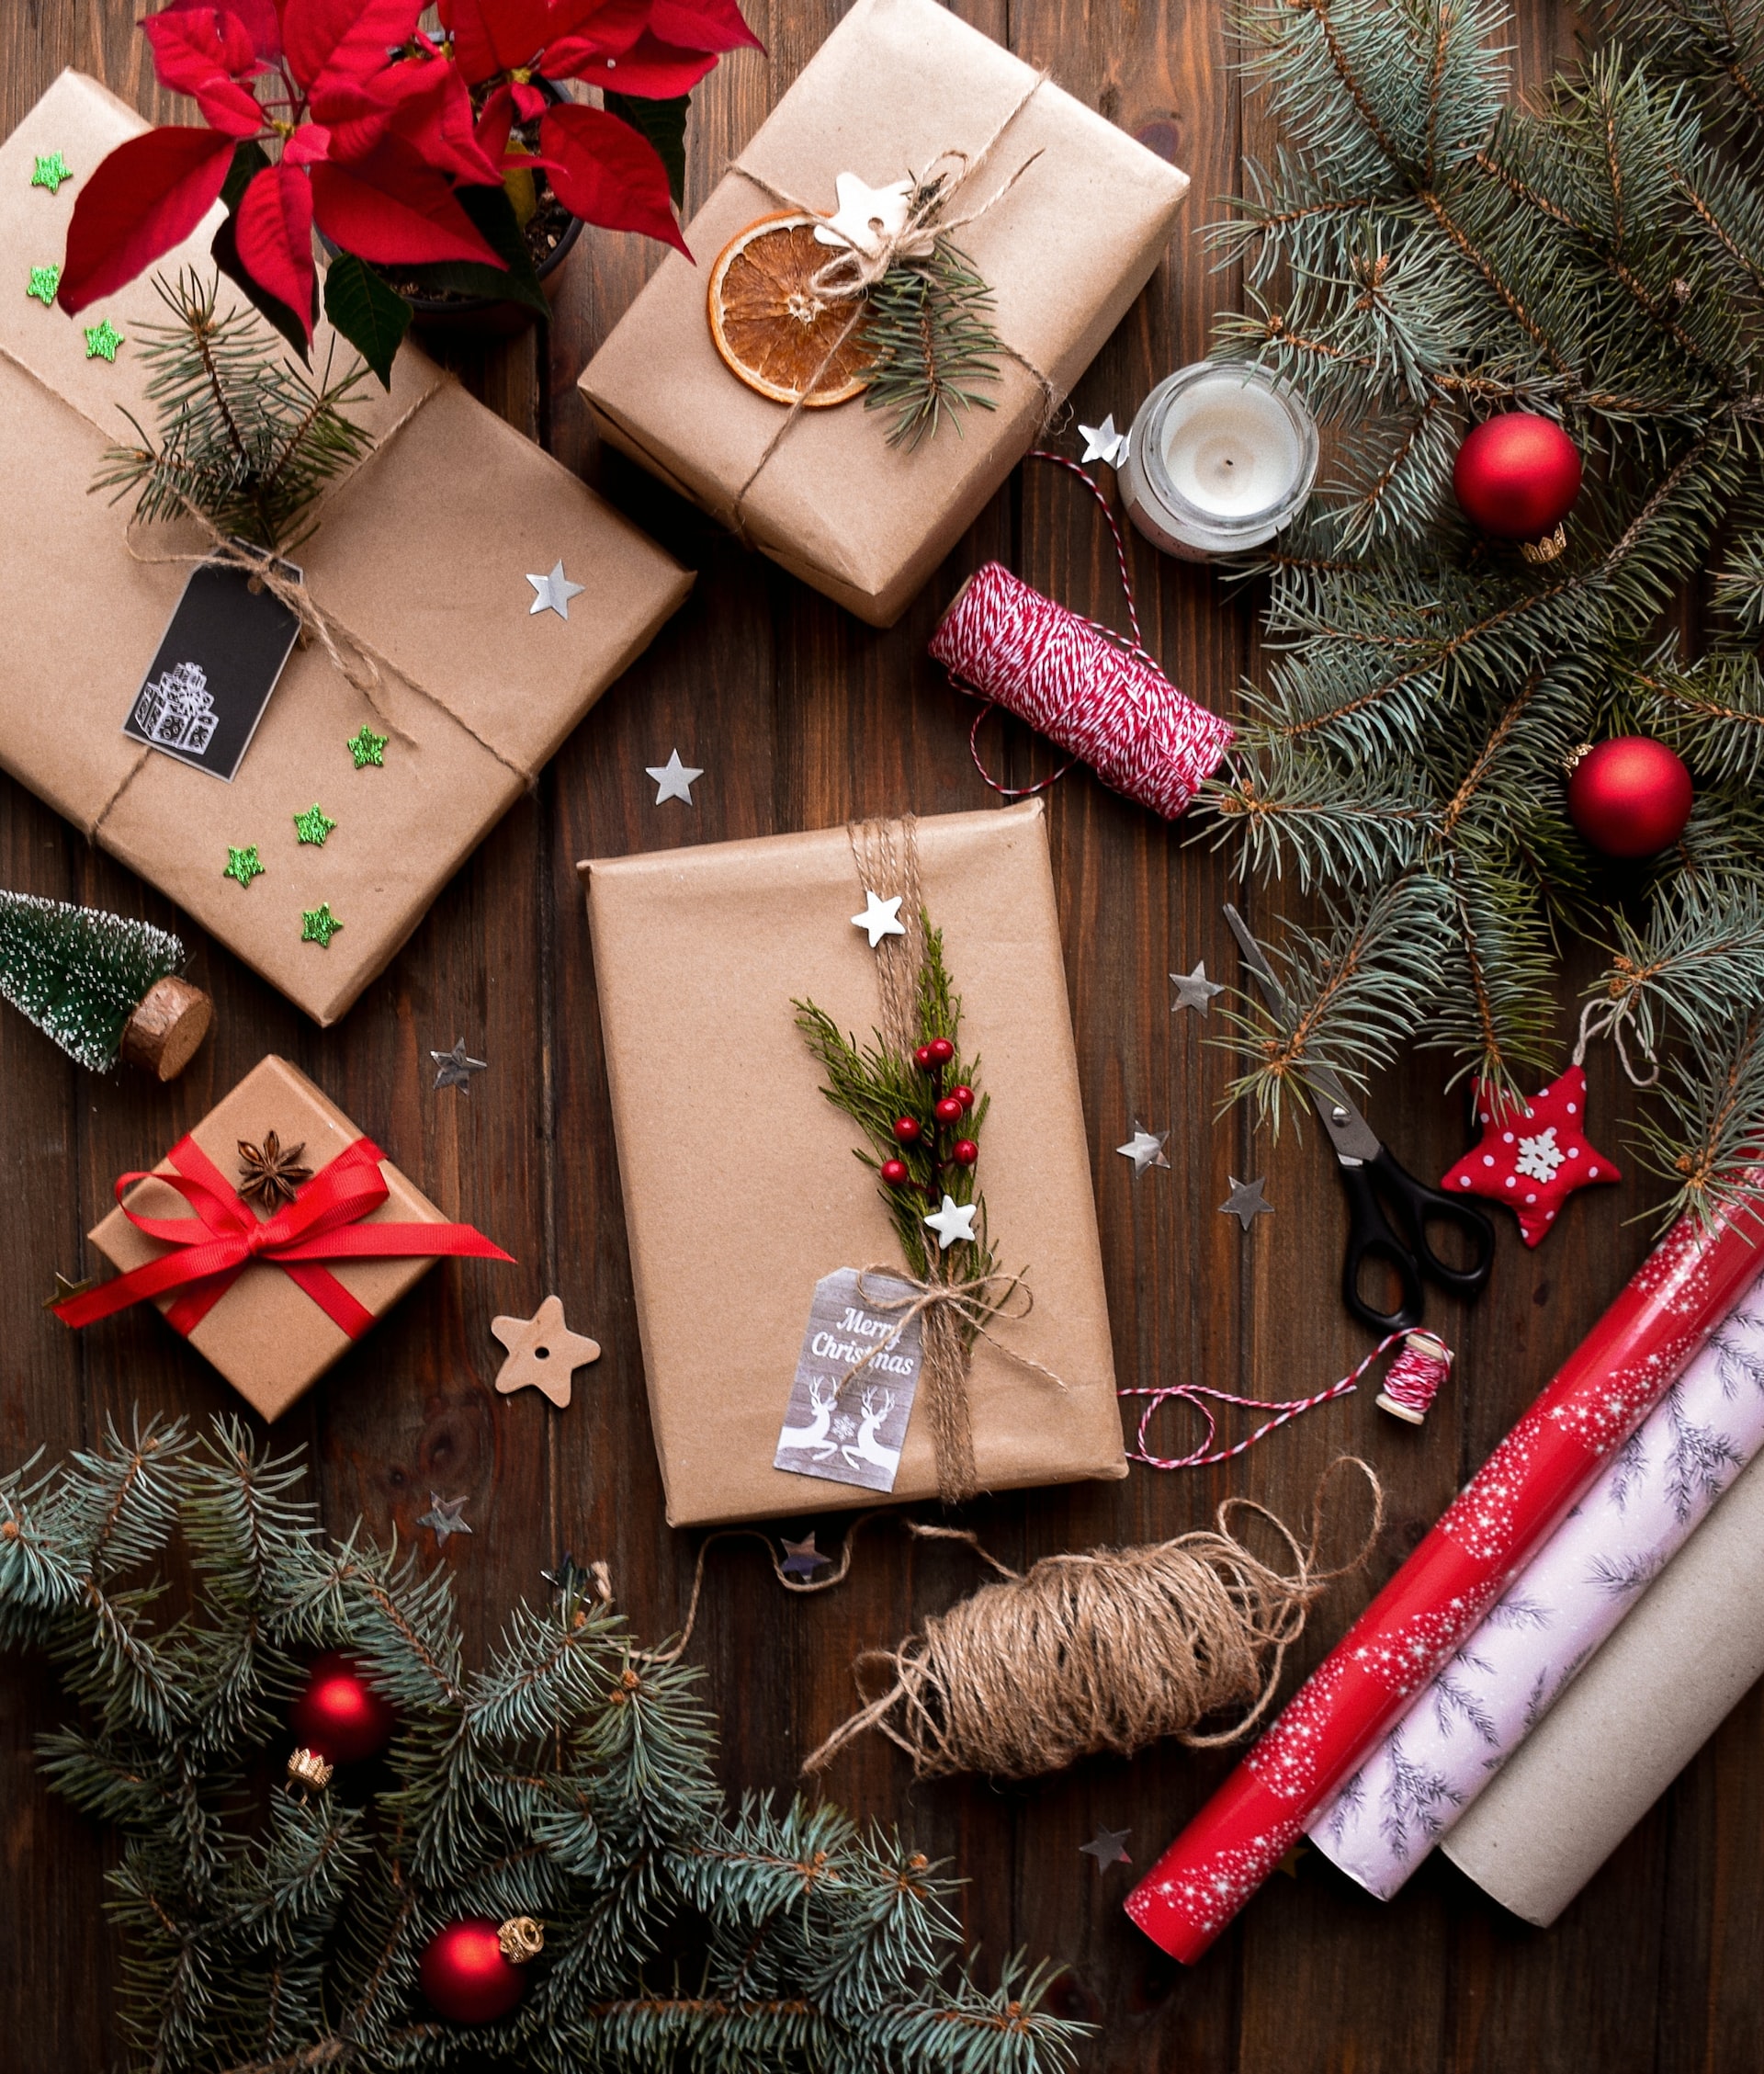 Κάνε τα δώρα σου να ξεχωρίζουν από το περιτύλιγμα- DIY ιδέες για να τα πακετάρεις σωστά